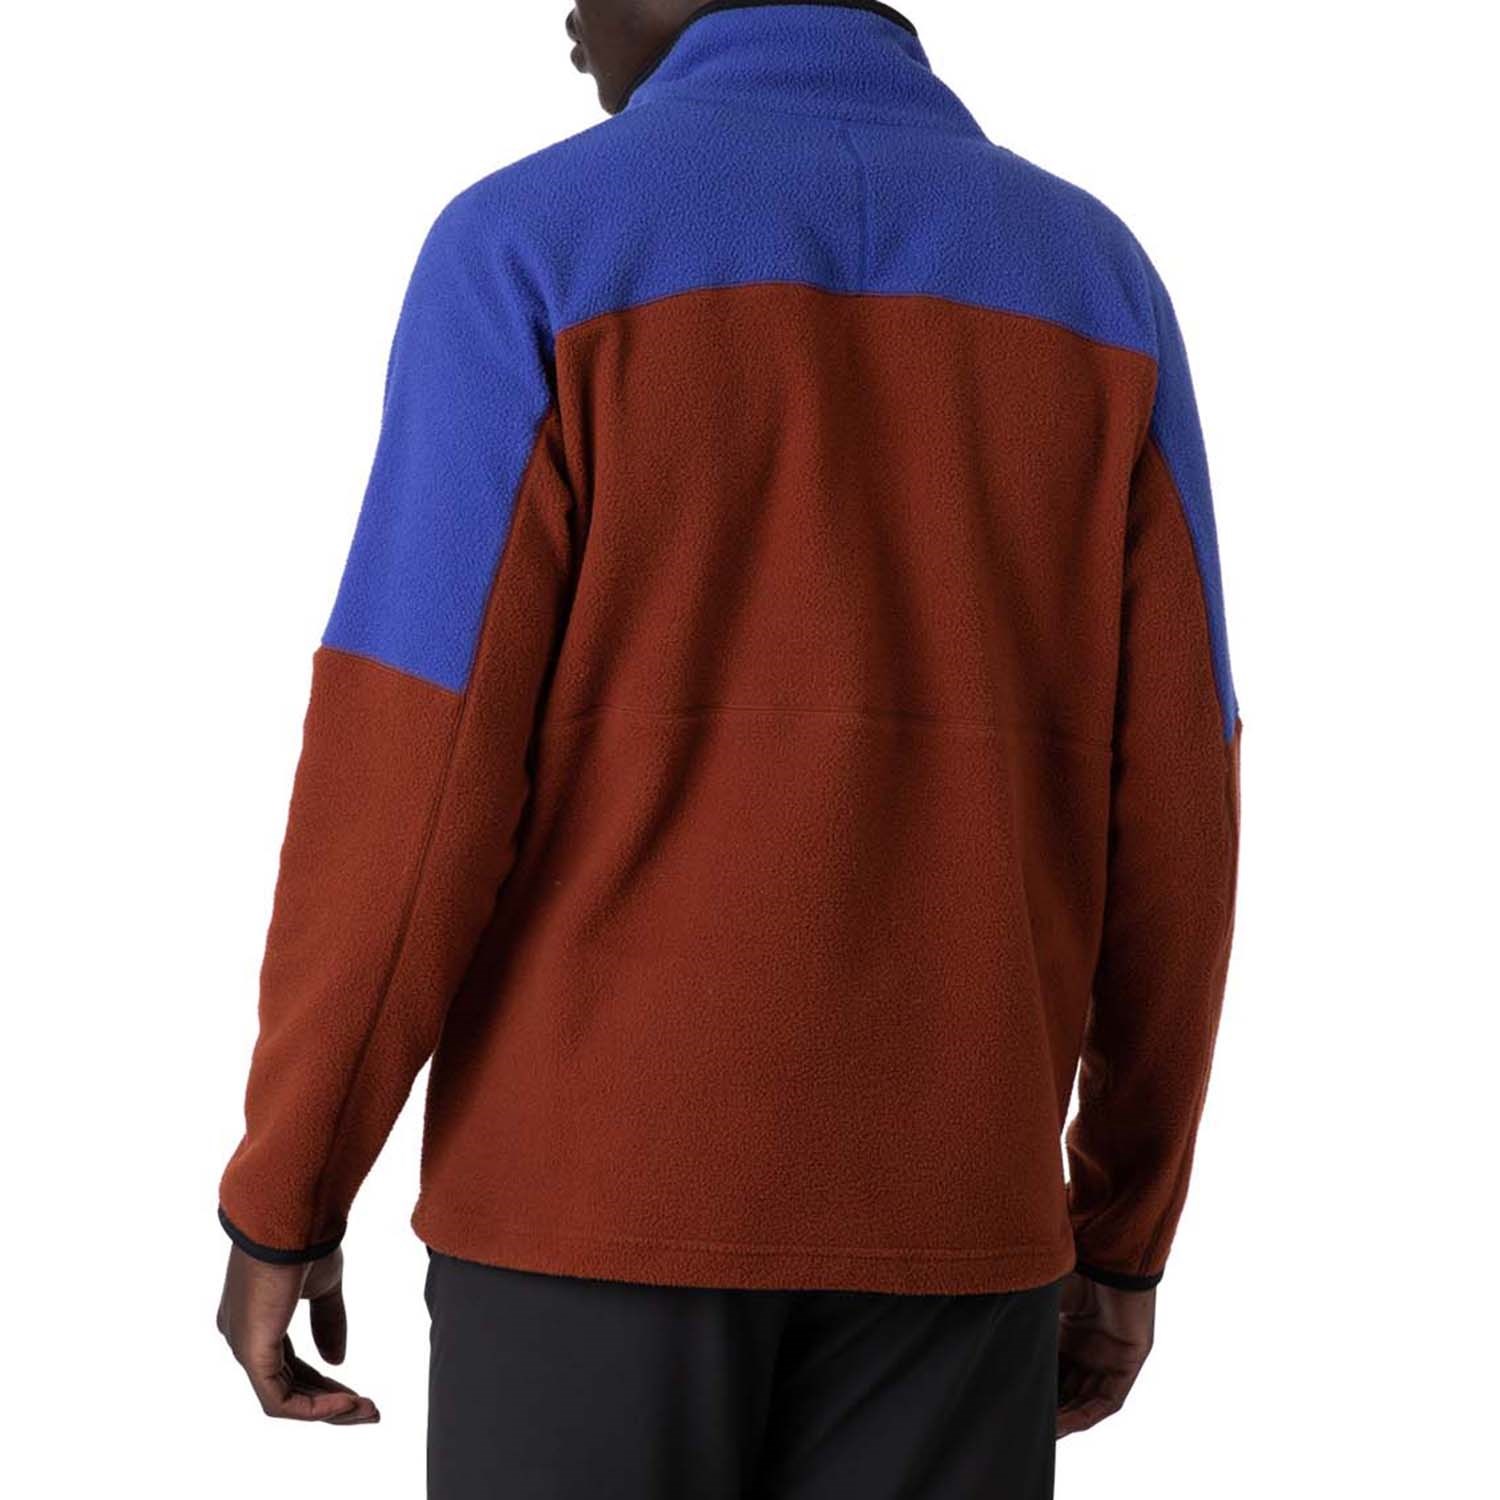 Cotopaxi Abrazo Half Zip Fleece Jacket - Men's